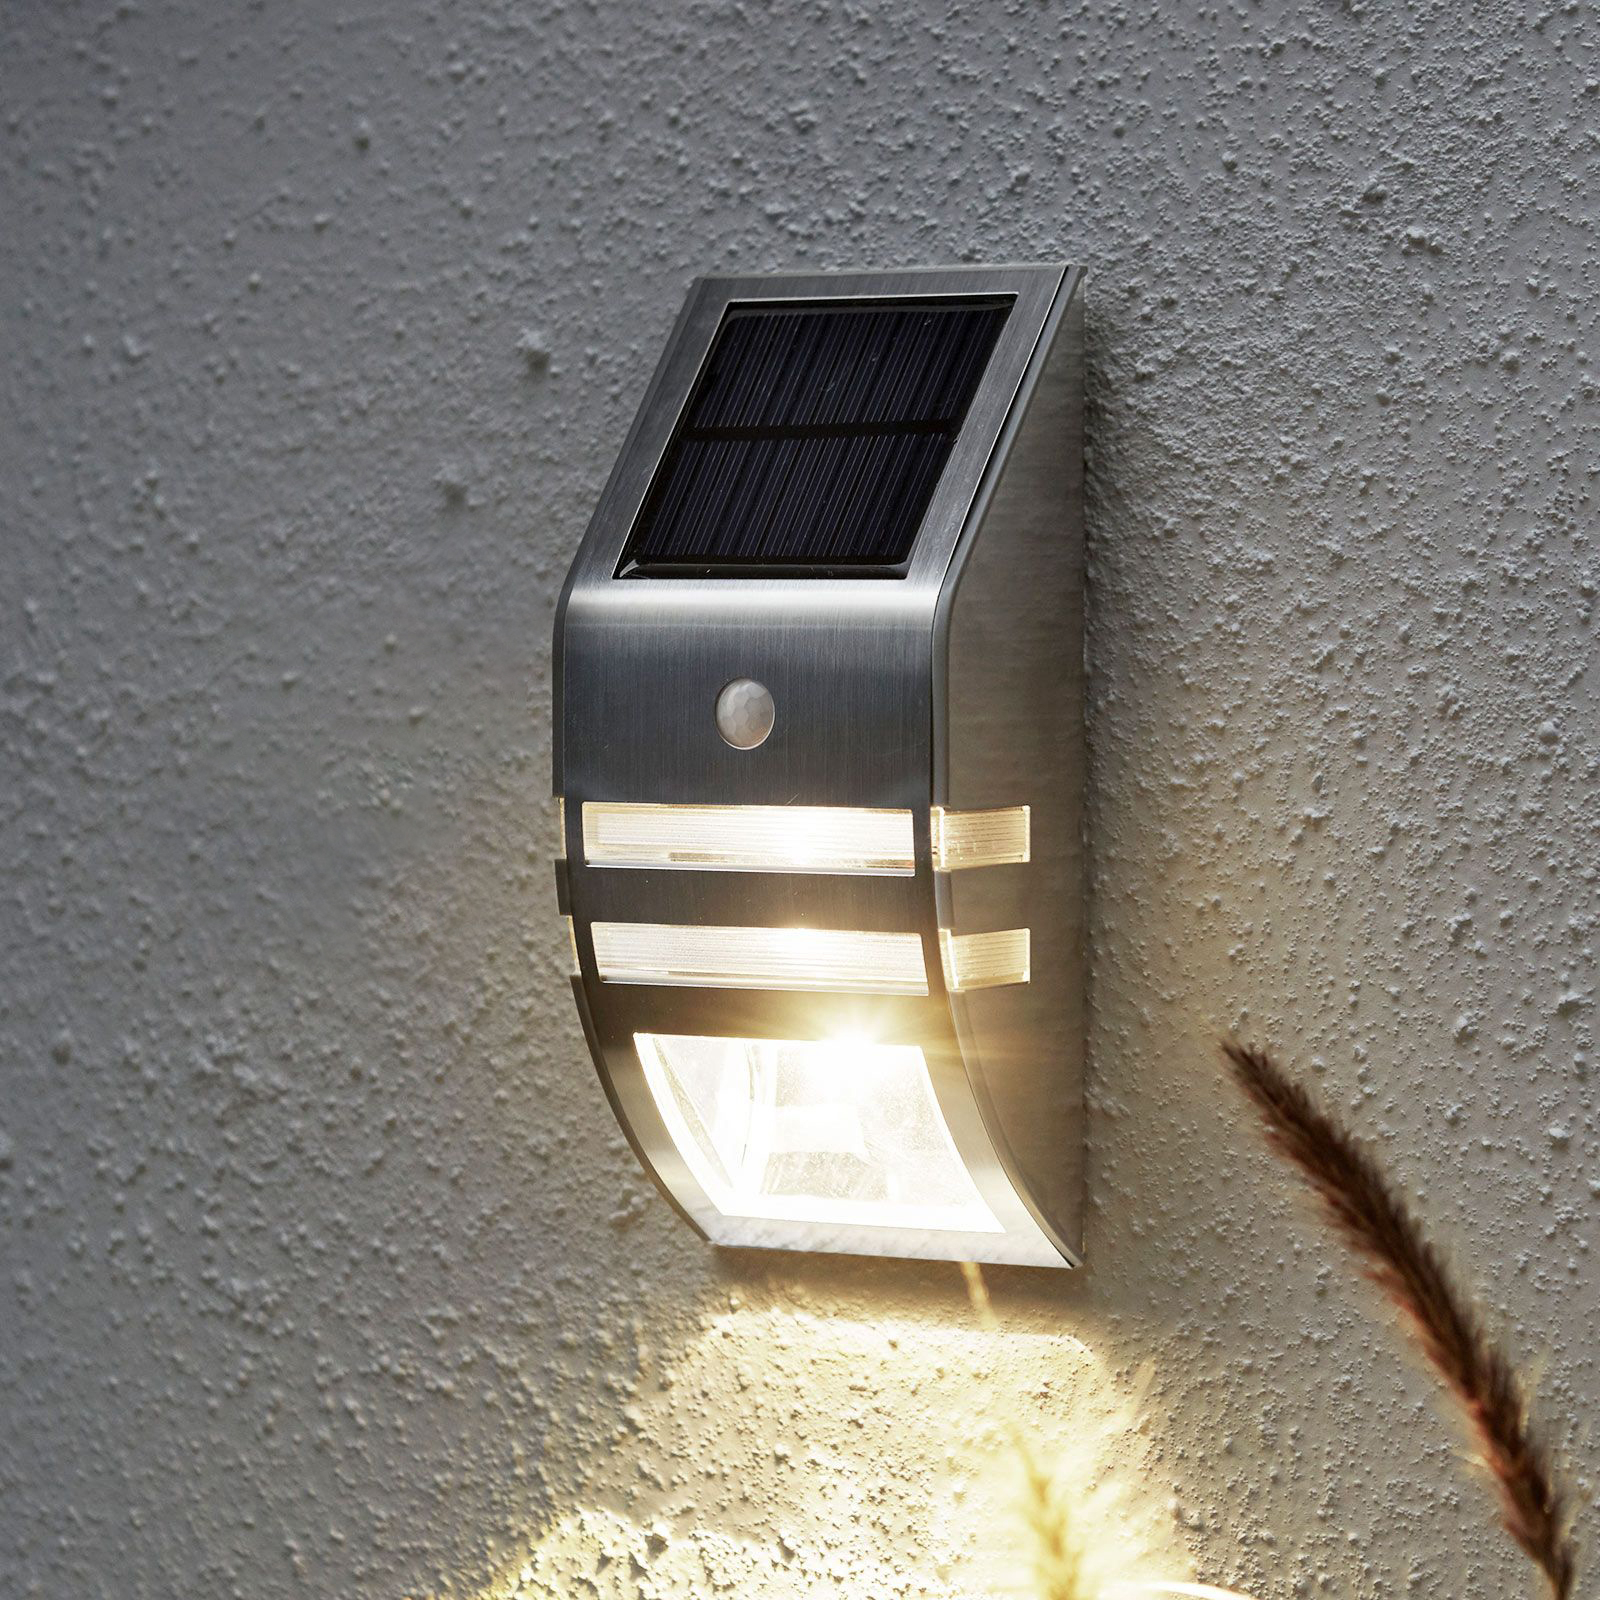 Tom Audreath pk uitspraak LED wandlamp op zonne-energie Wally, BWM | Lampen24.be